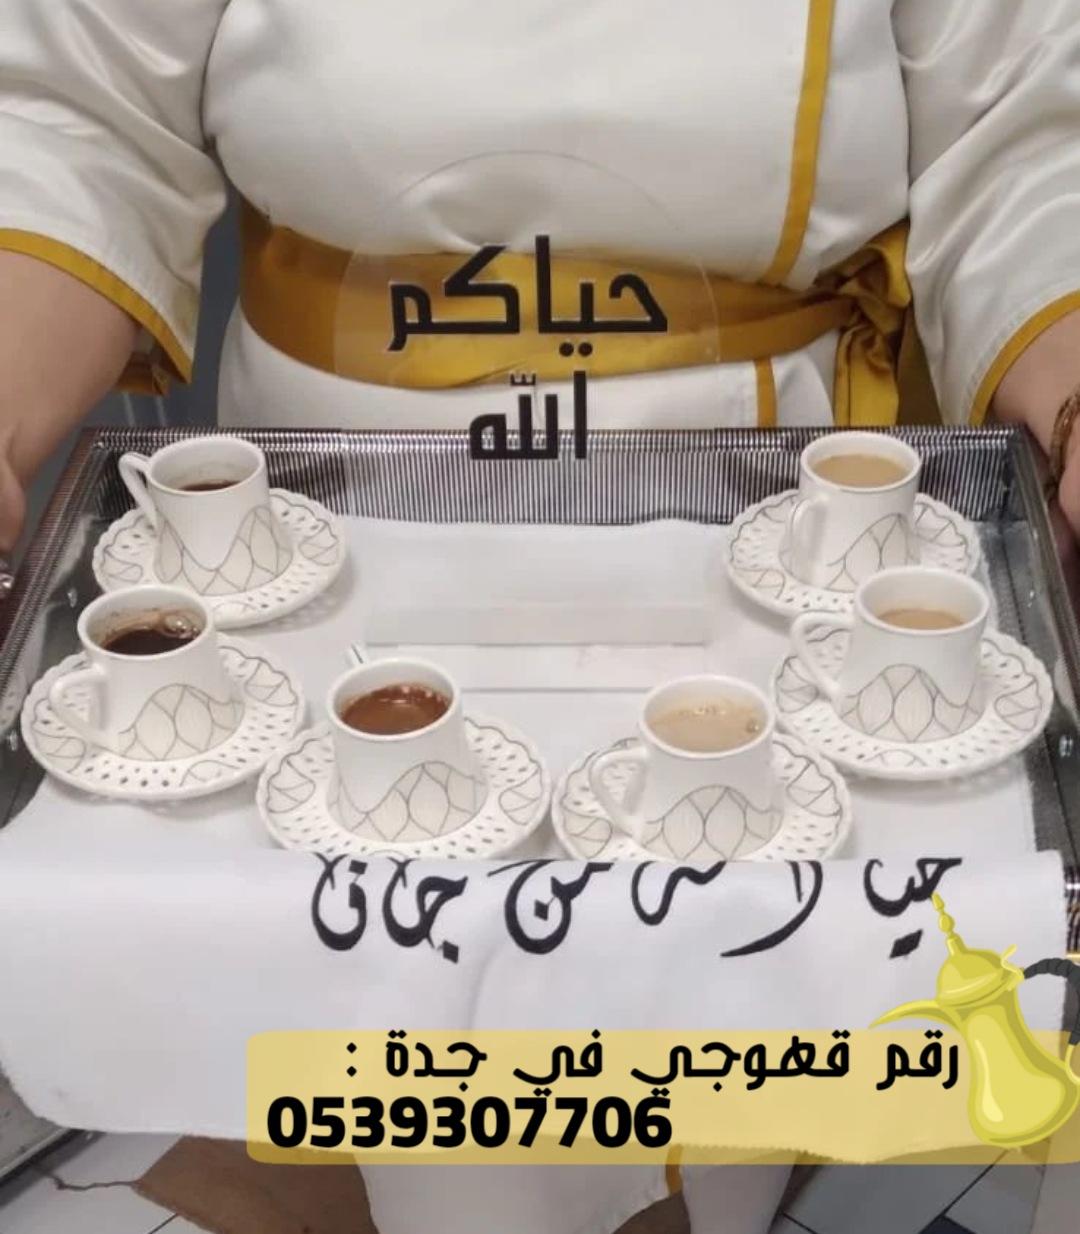 صبابات قهوة و صبابين قهوه في جدة,0539307706 825822194